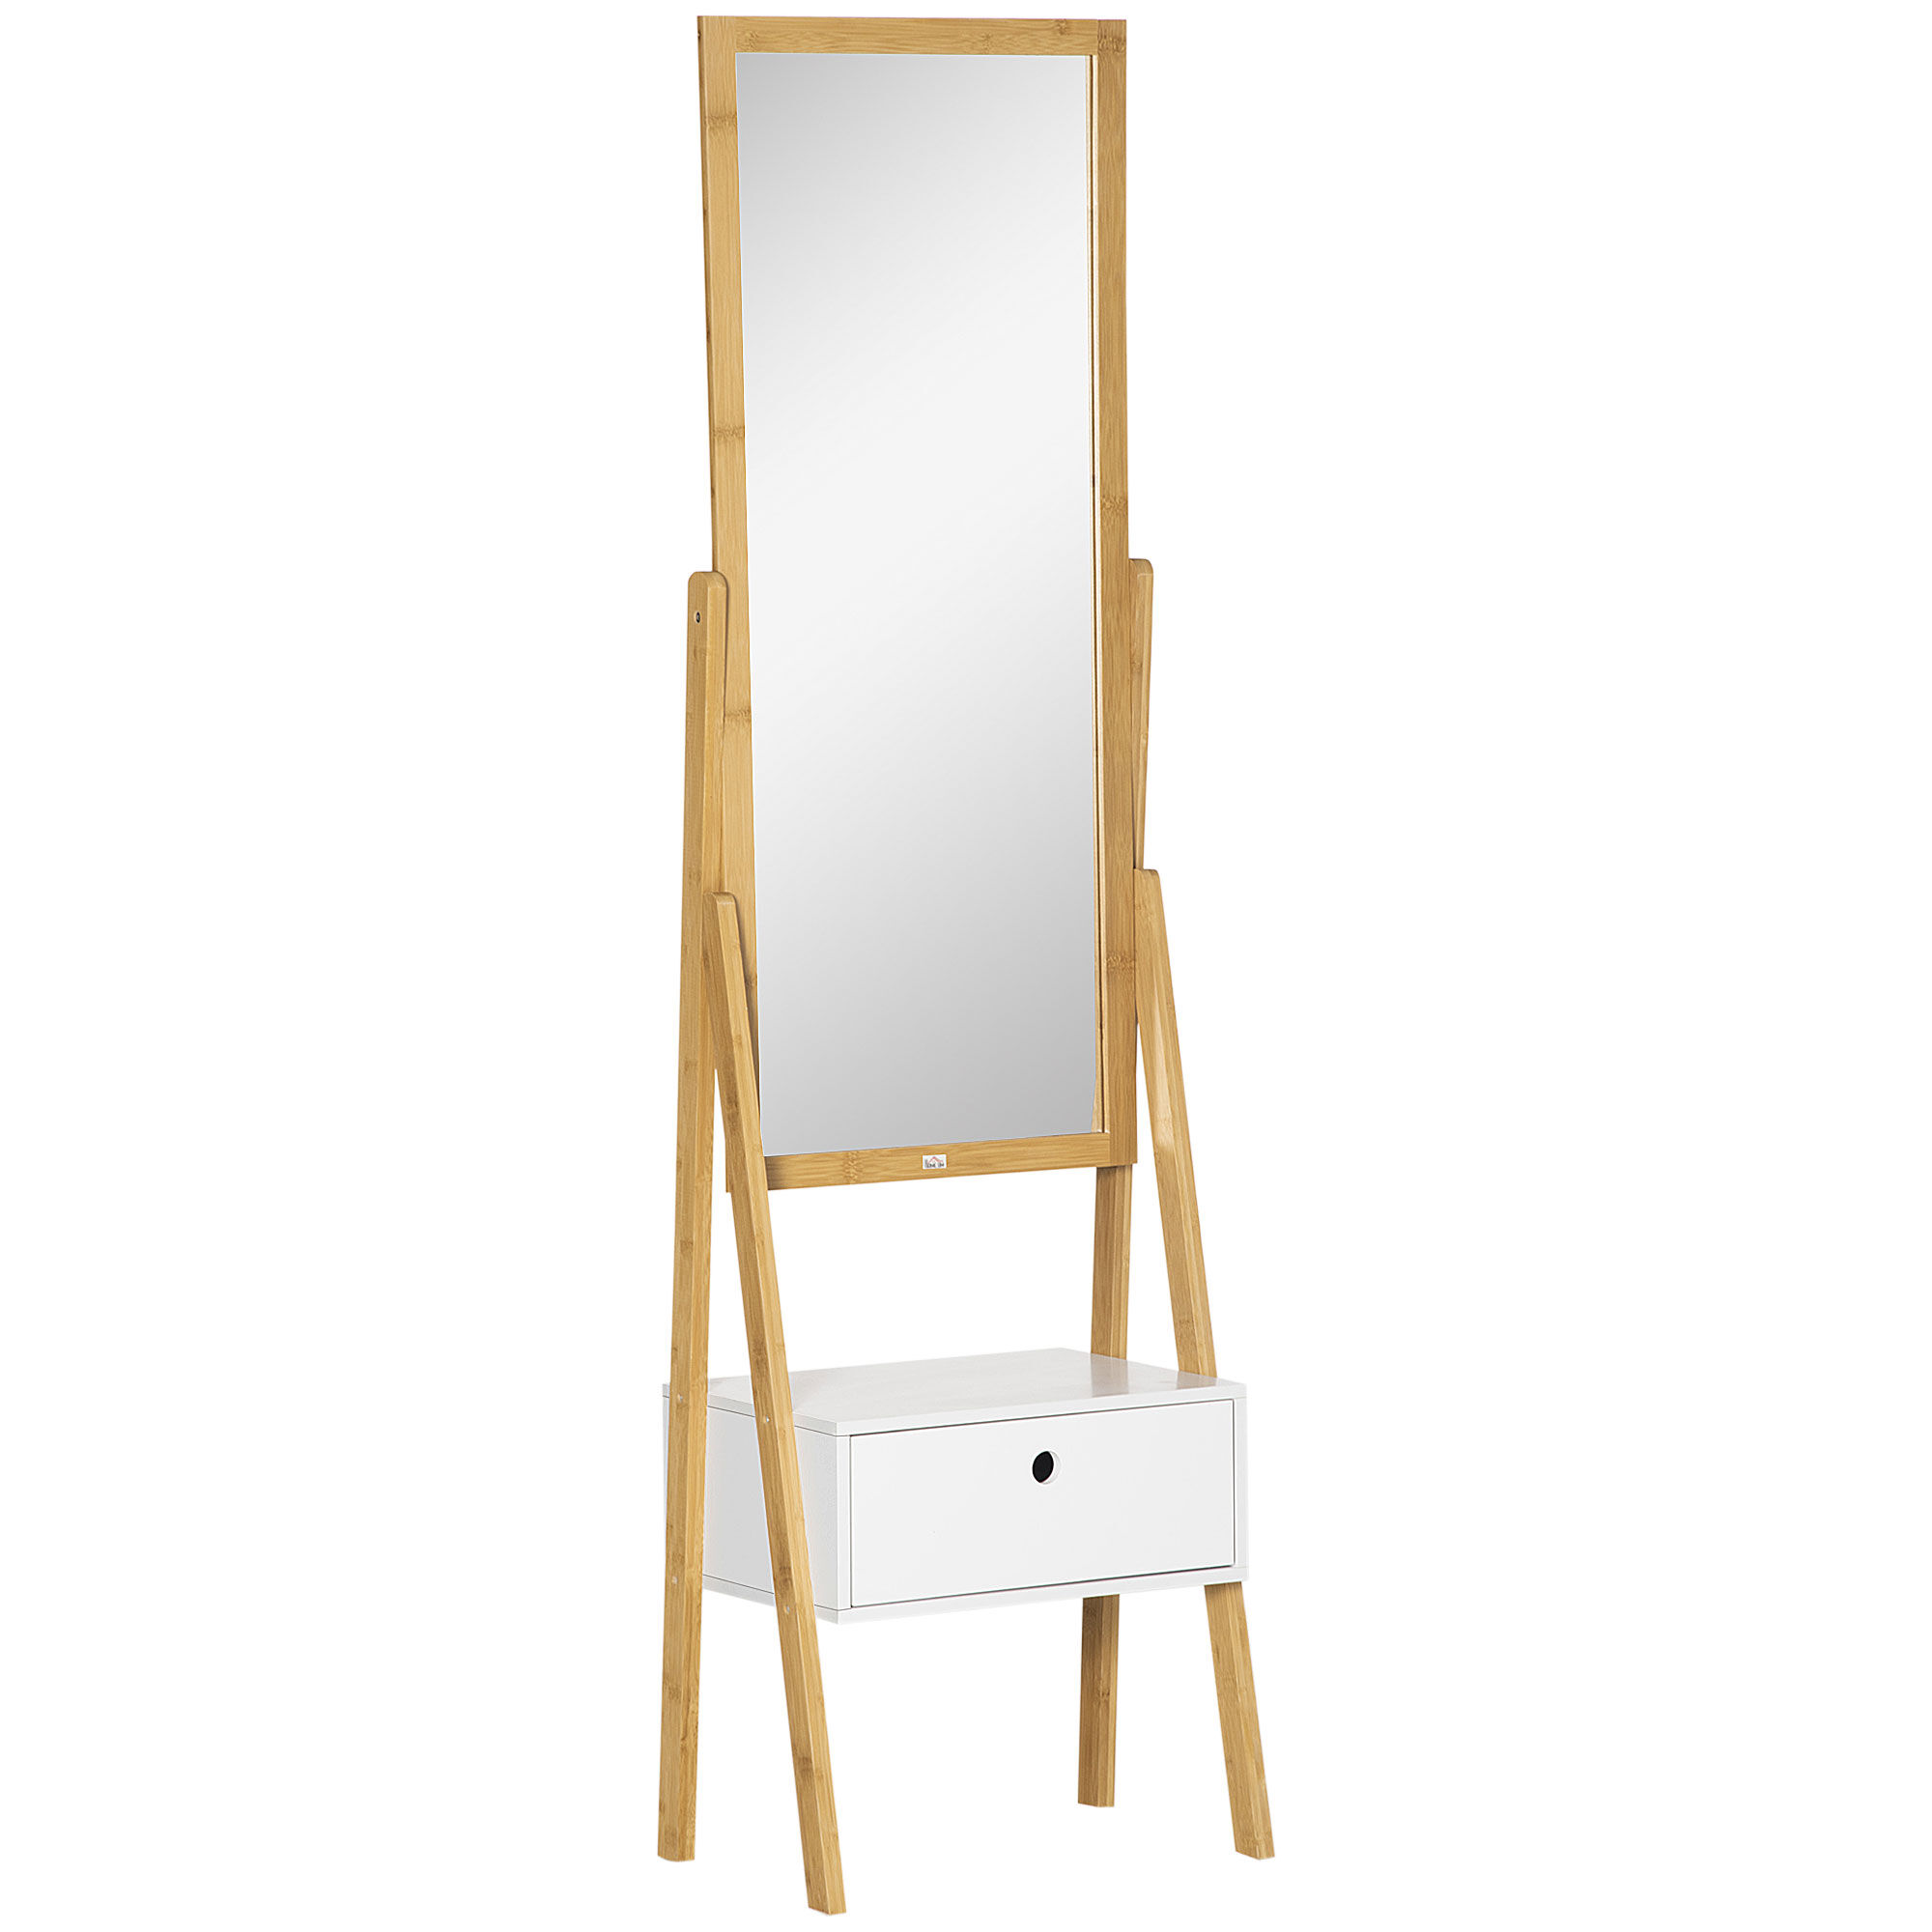 Homcom Specchio da Terra con Cassetto, in MDF e Bambù, 45x30x160 cm, Bianco e Color Legno